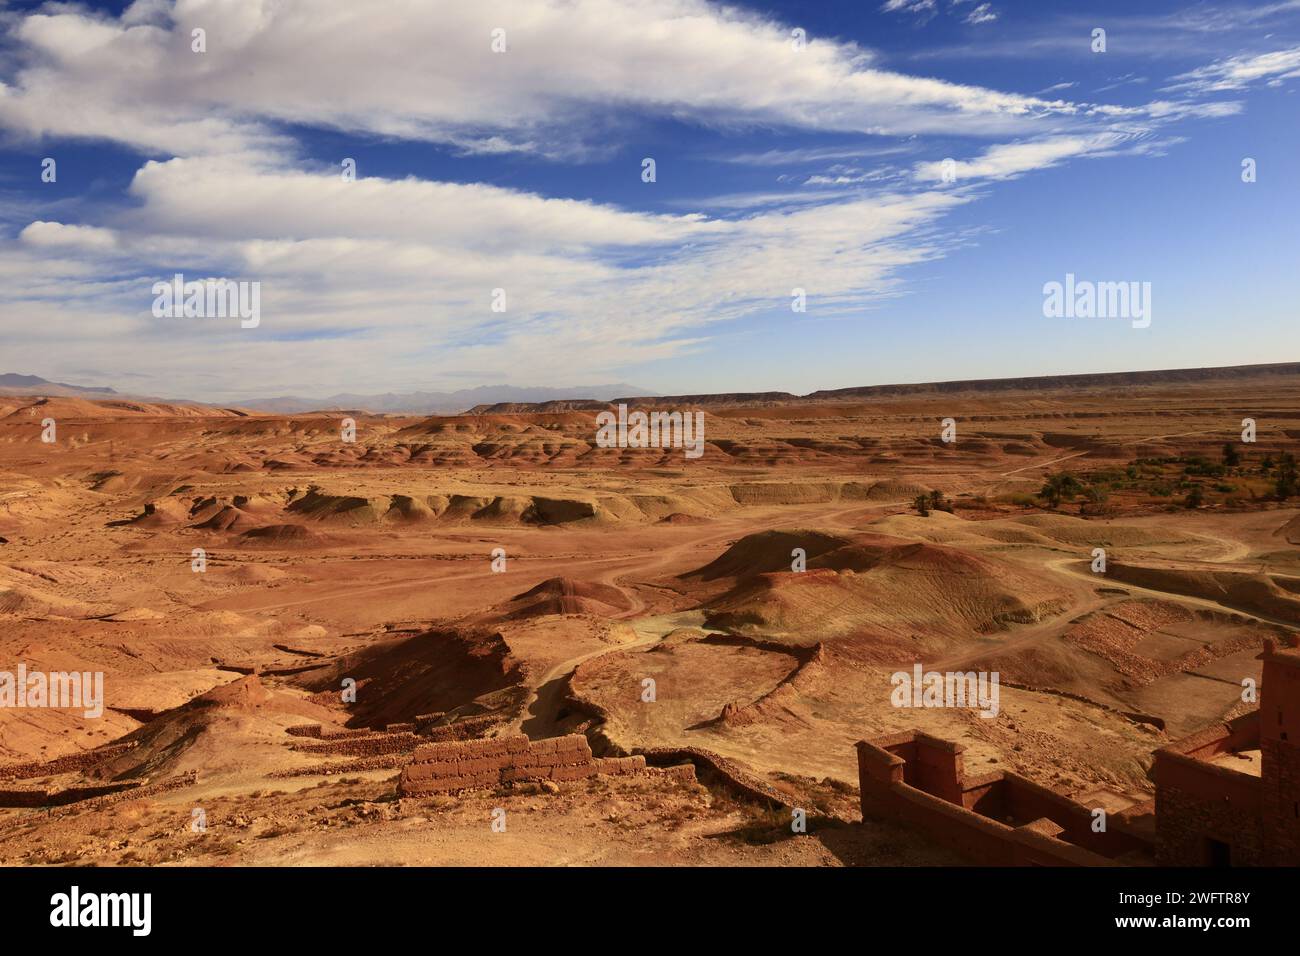 Vista dall'Ait Benhaddou situata lungo l'ex percorso carovaniero tra il Sahara e Marrakech in Marocco Foto Stock